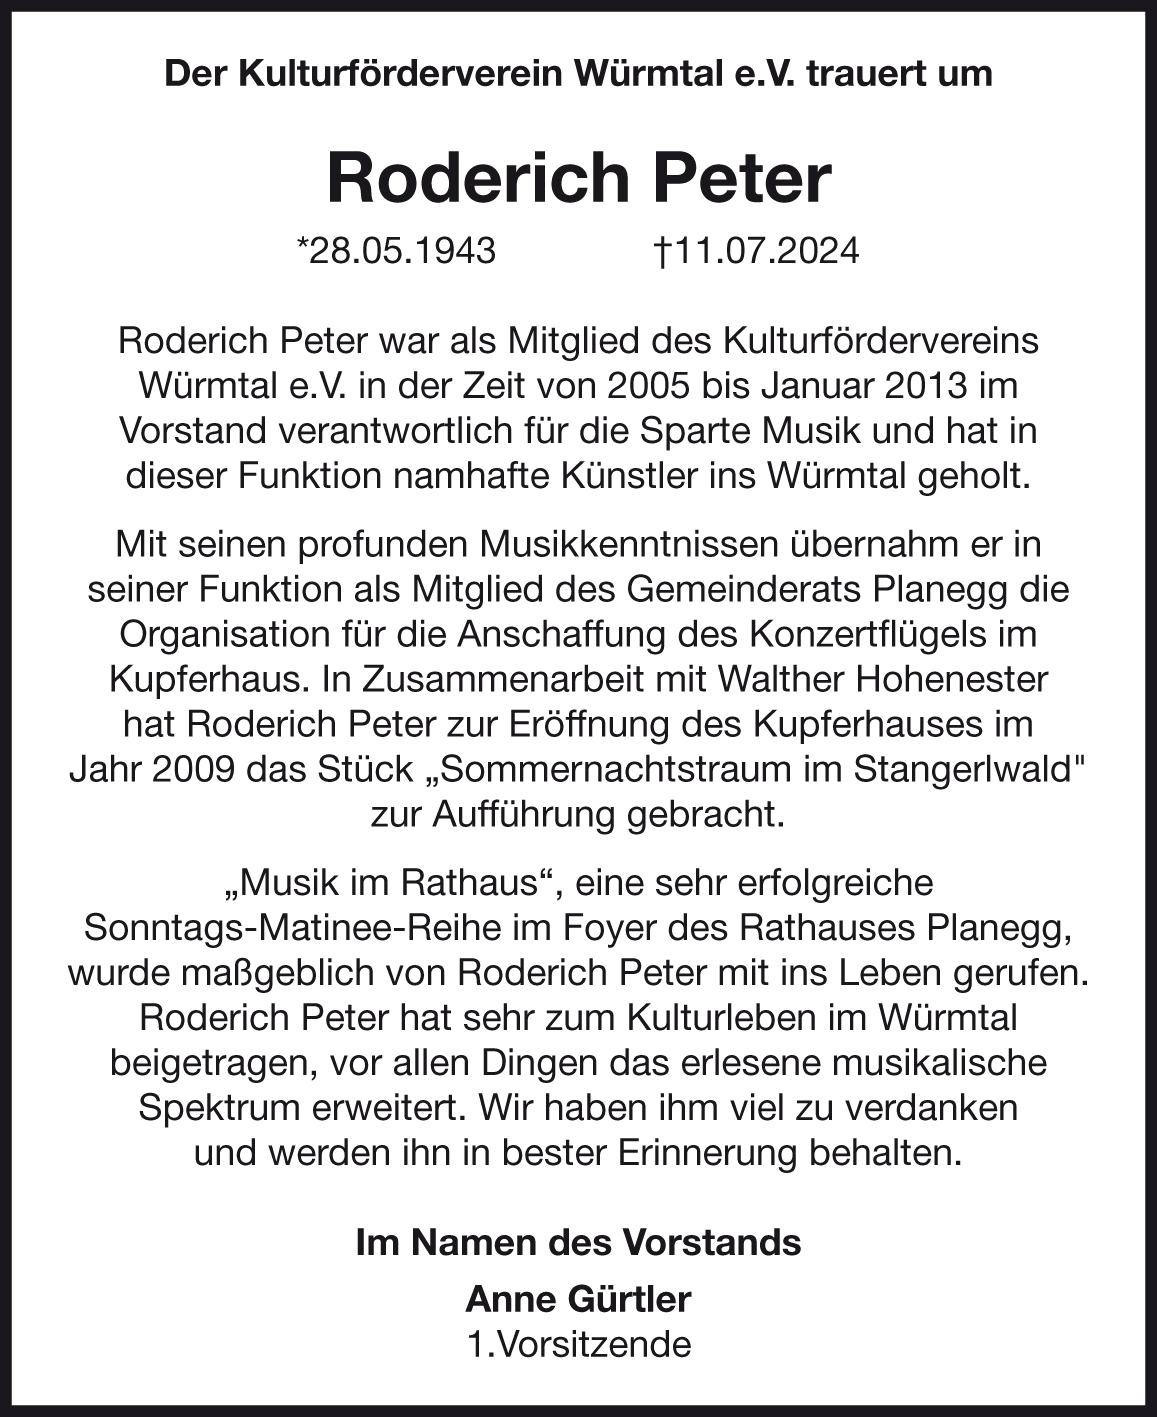 Roderich Peter